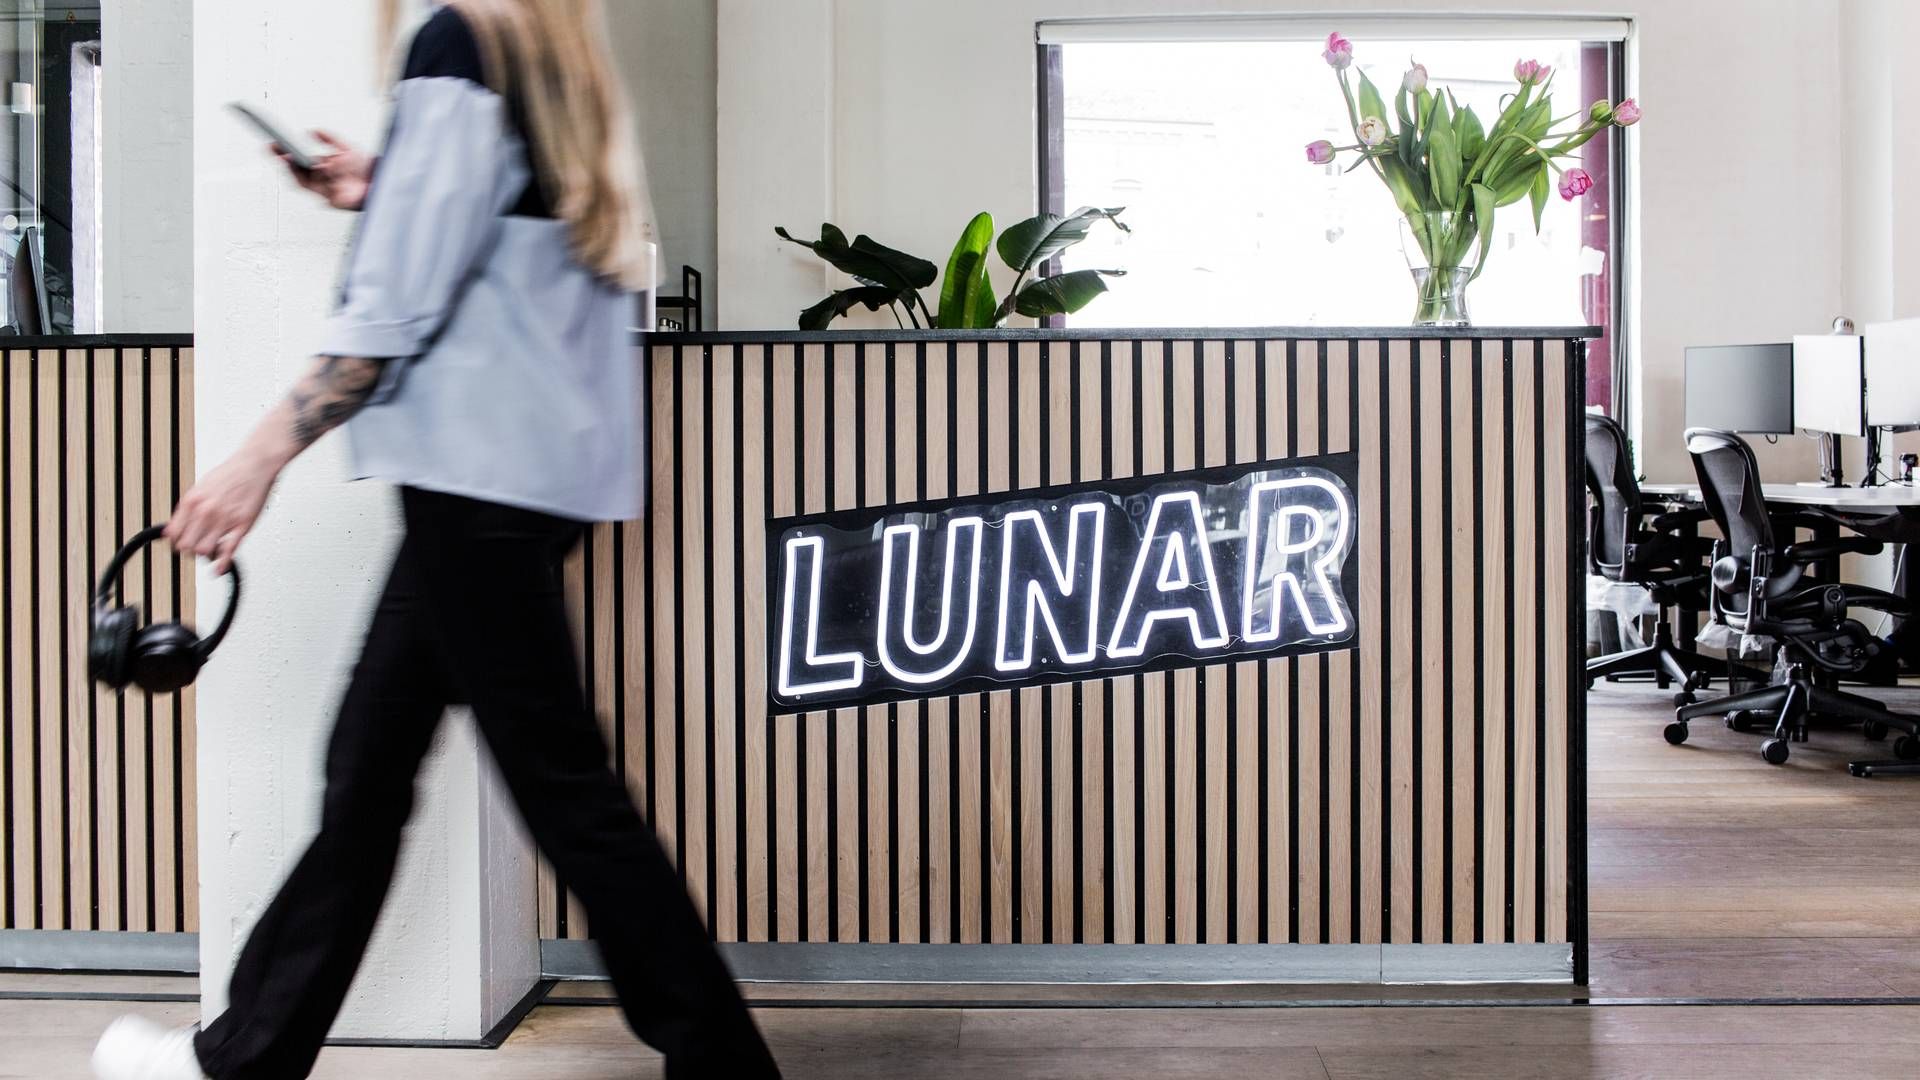 Lunar har afskediget en række ansatte efter organisationsændring. | Foto: PR/Lunar Bank